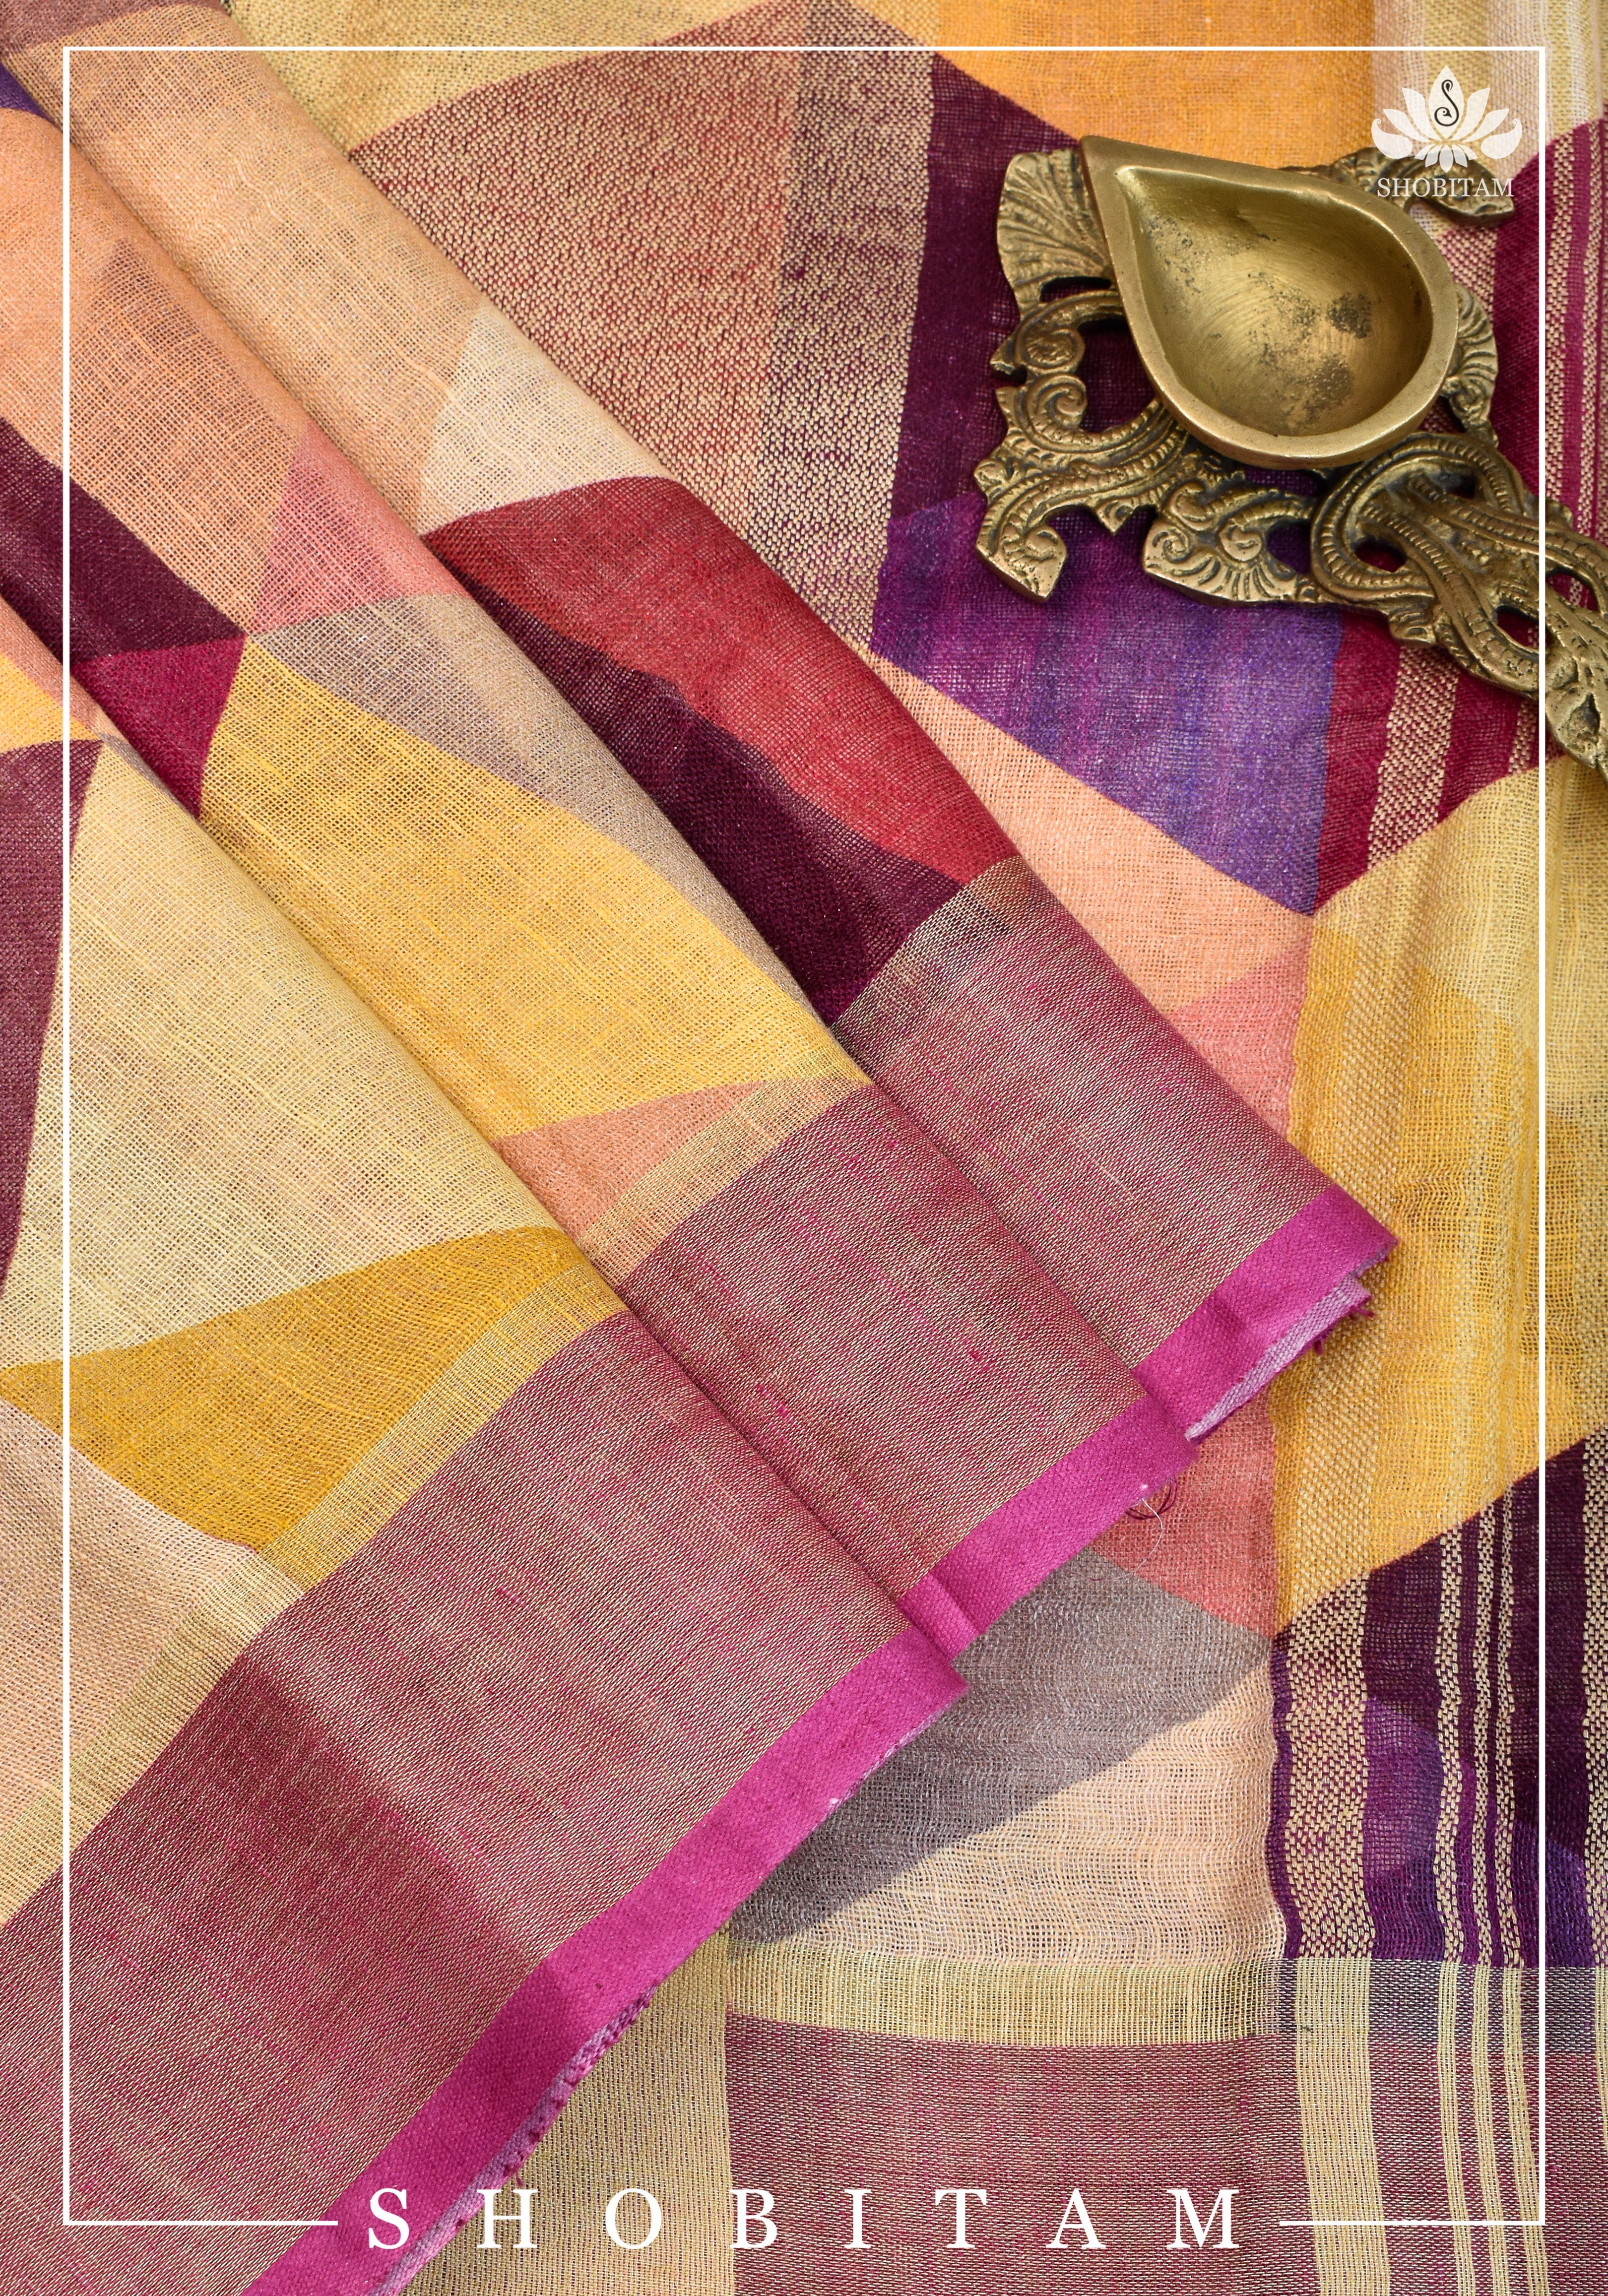 Pretty Shobitam Designer Multicolor Geometric Print Linen Saree with Zari Border